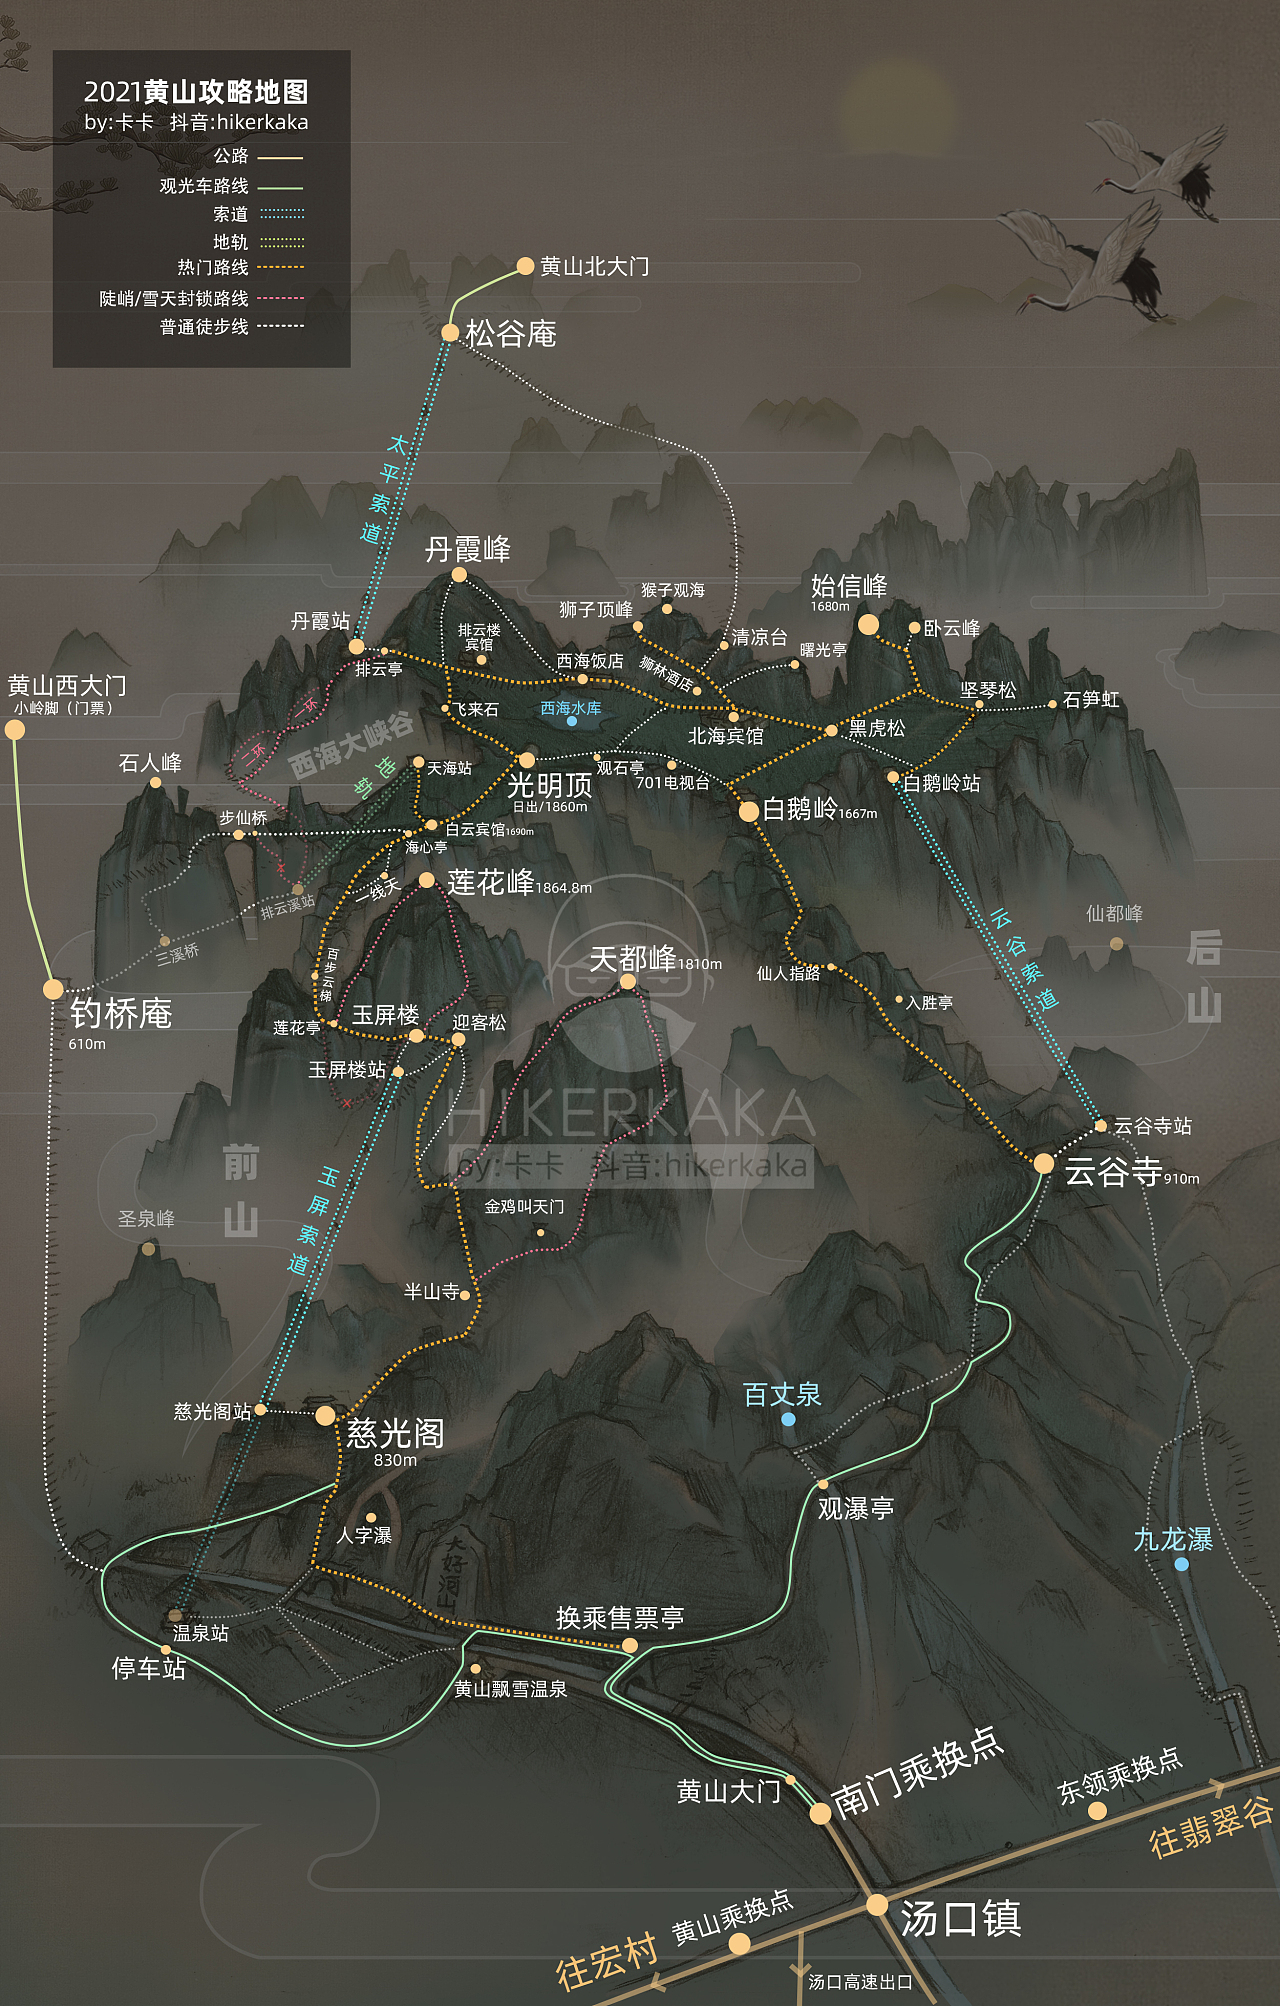 黄山的景区地图-黄山旅游地图